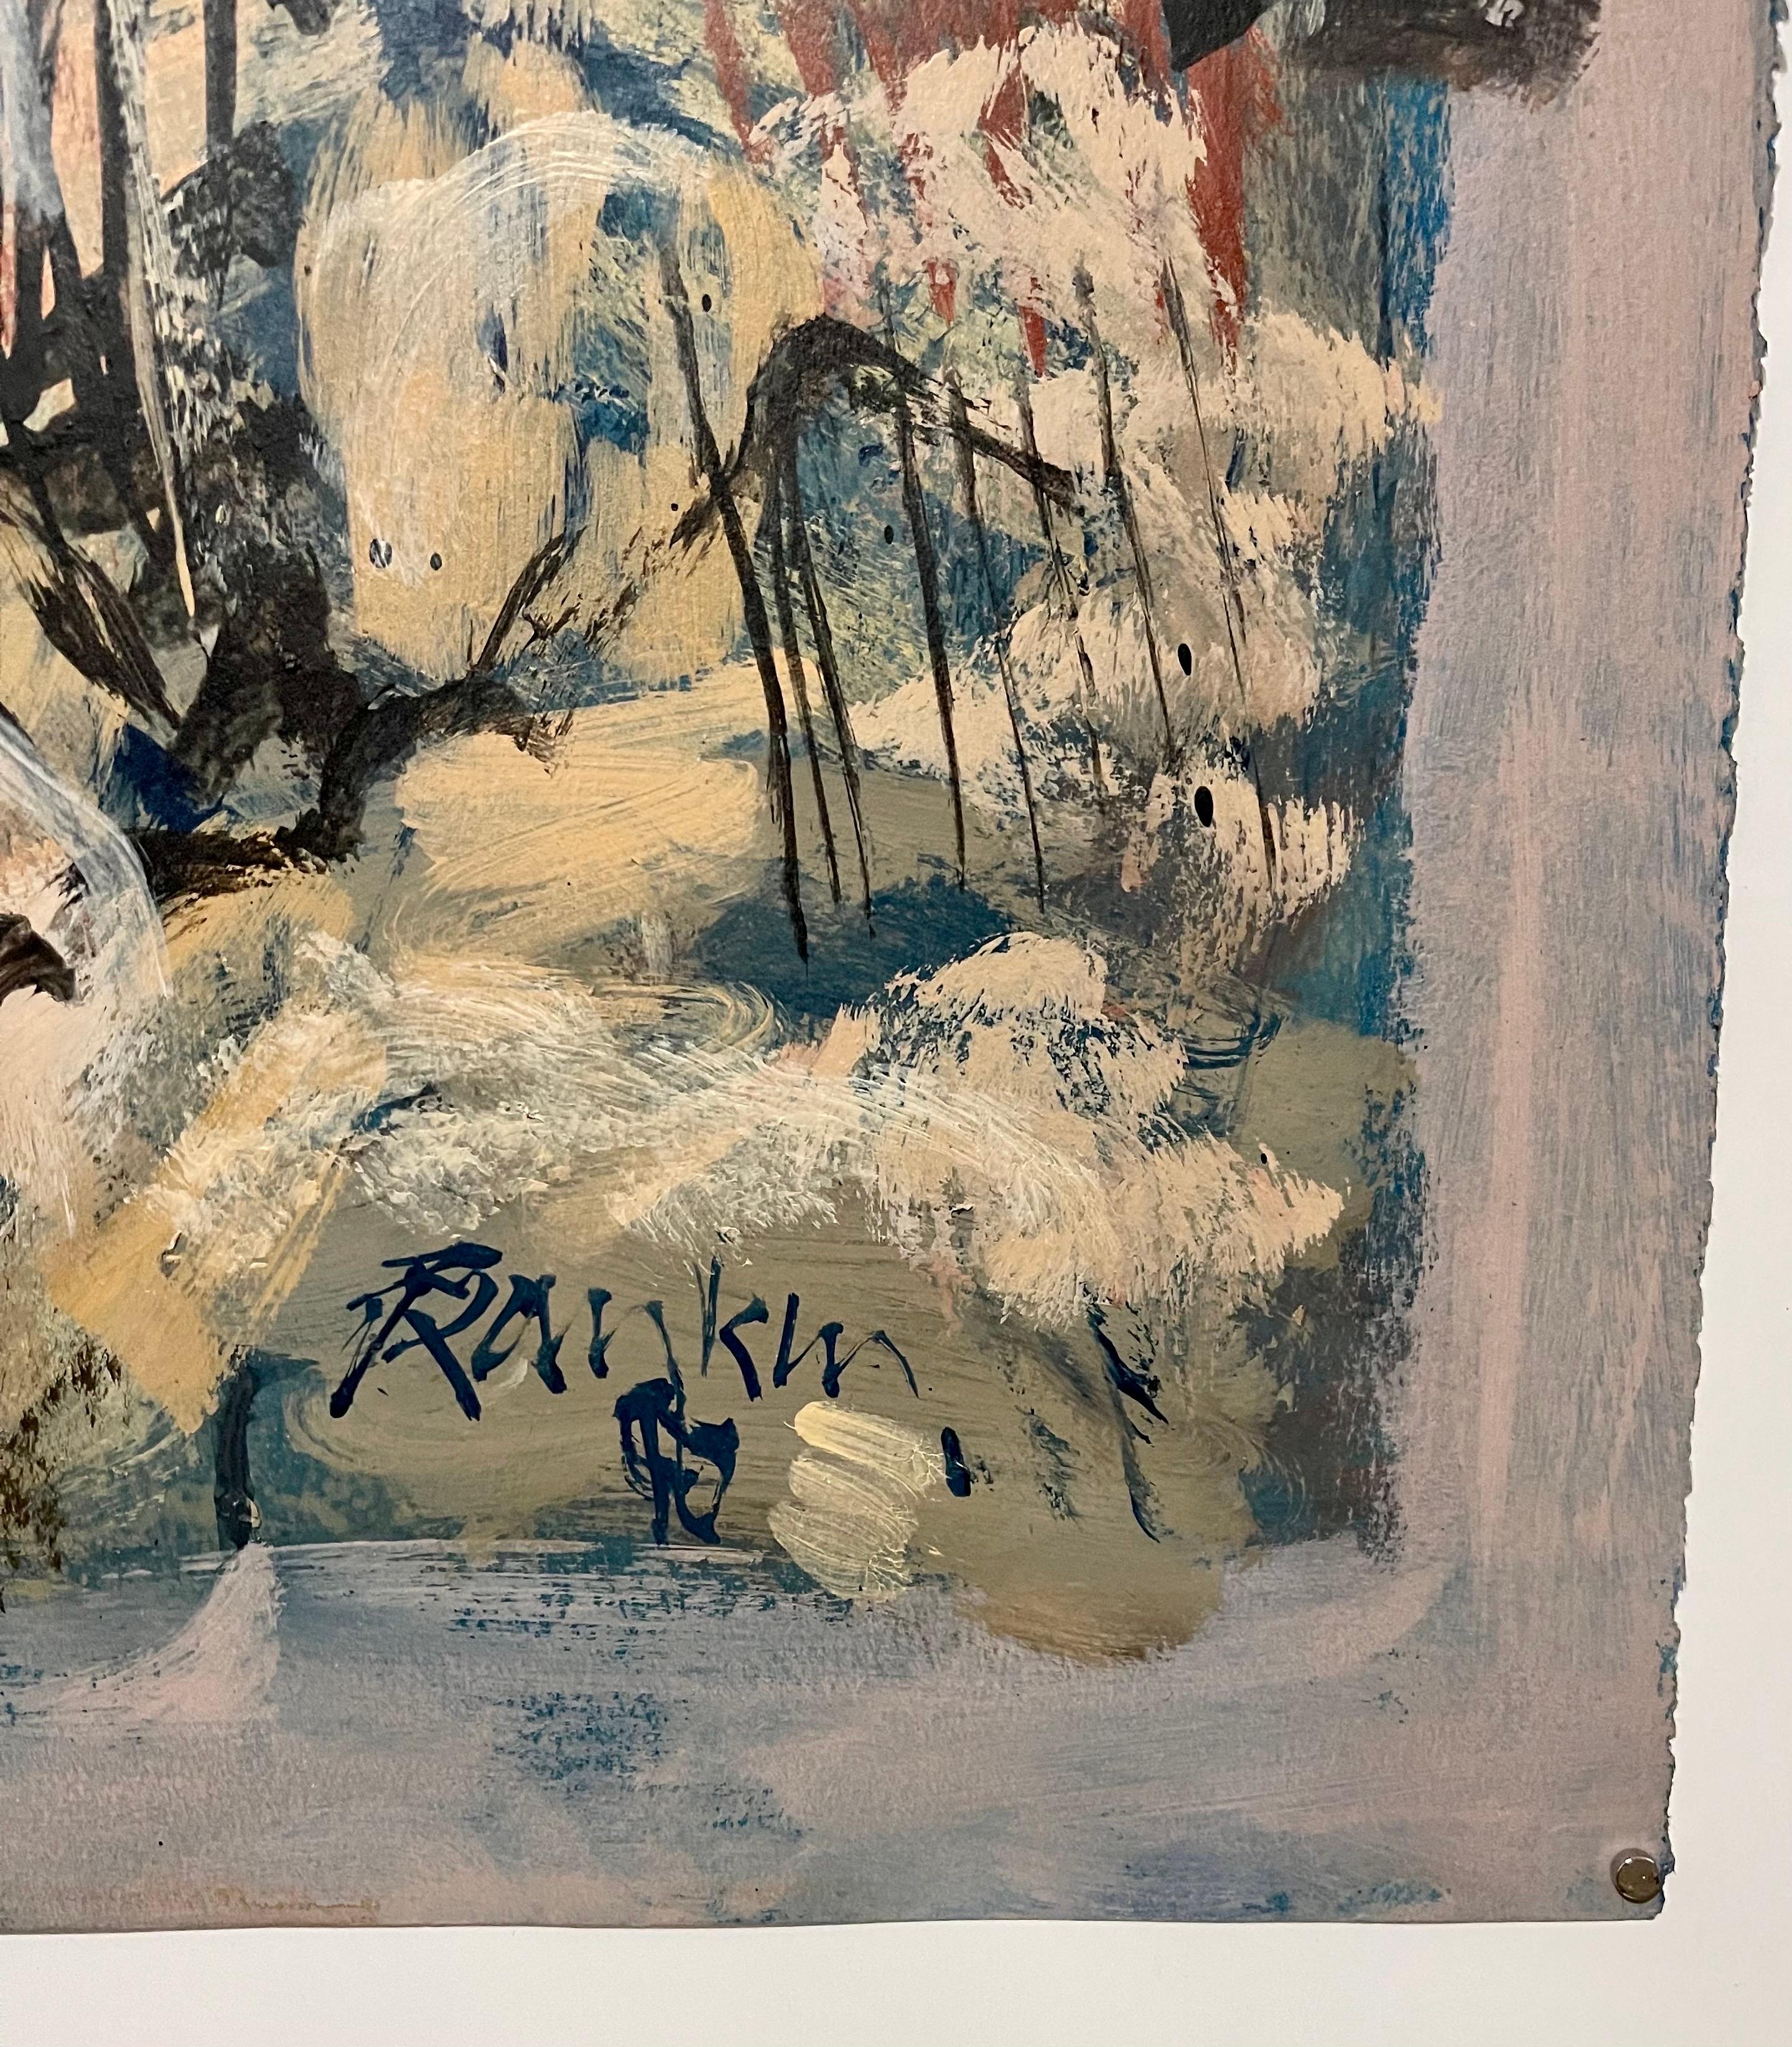 Australisches abstraktes expressionistisches Ölgemälde Rocky Hillside, D. Rankin, australisch-amerikanischer Künstler (Abstrakter Expressionismus), Painting, von David Rankin